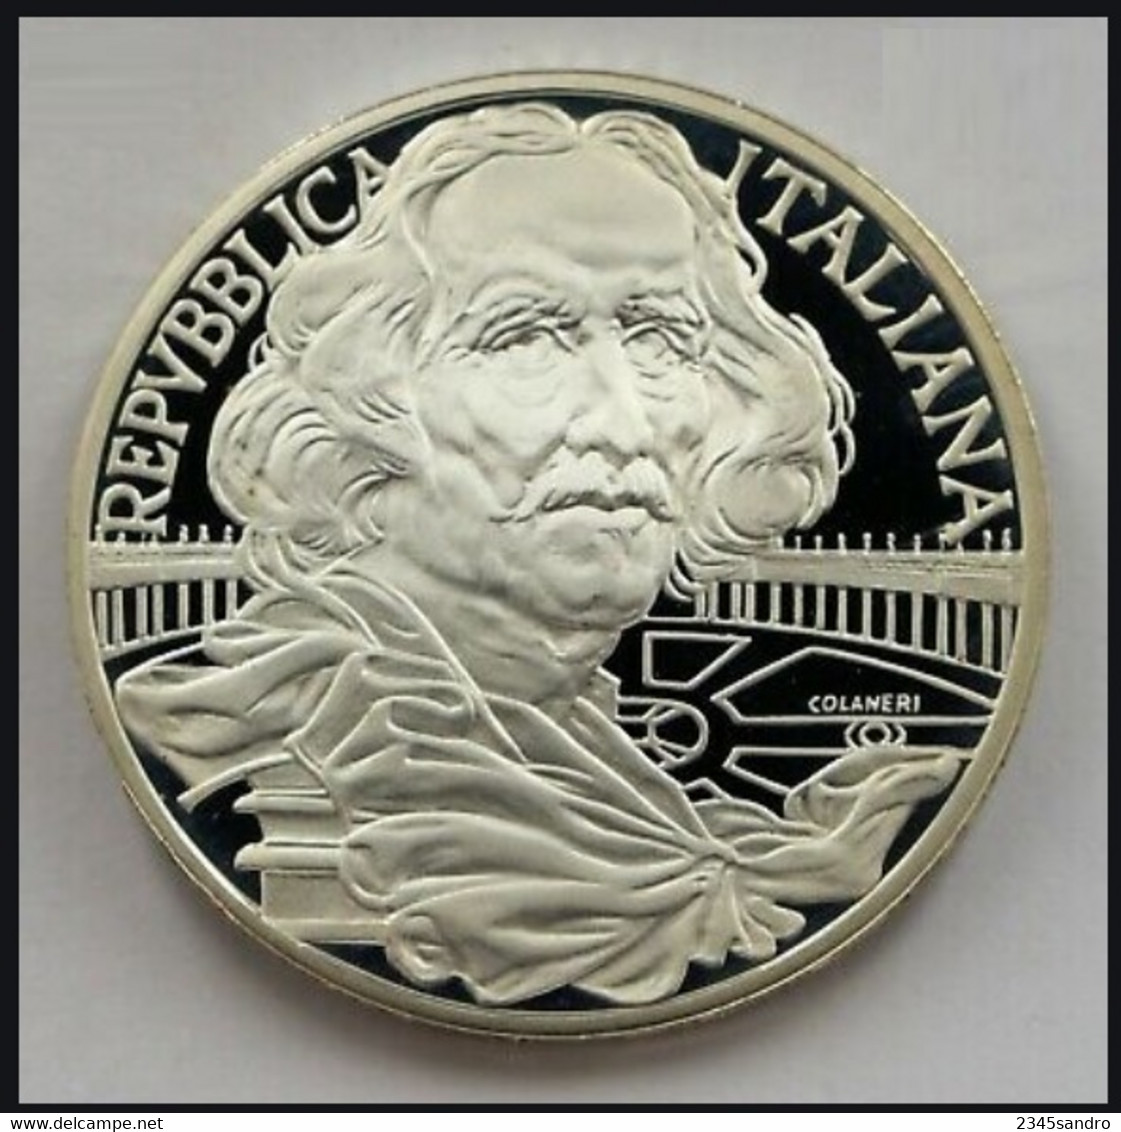 1000 LIRE 1998 "BERNINI" COMMEMORATIVA ARGENTO FDC, Uncirculated, Stempelglanz, Fleur De Coin REPUBBLICA ITALIANA - 1 000 Liras